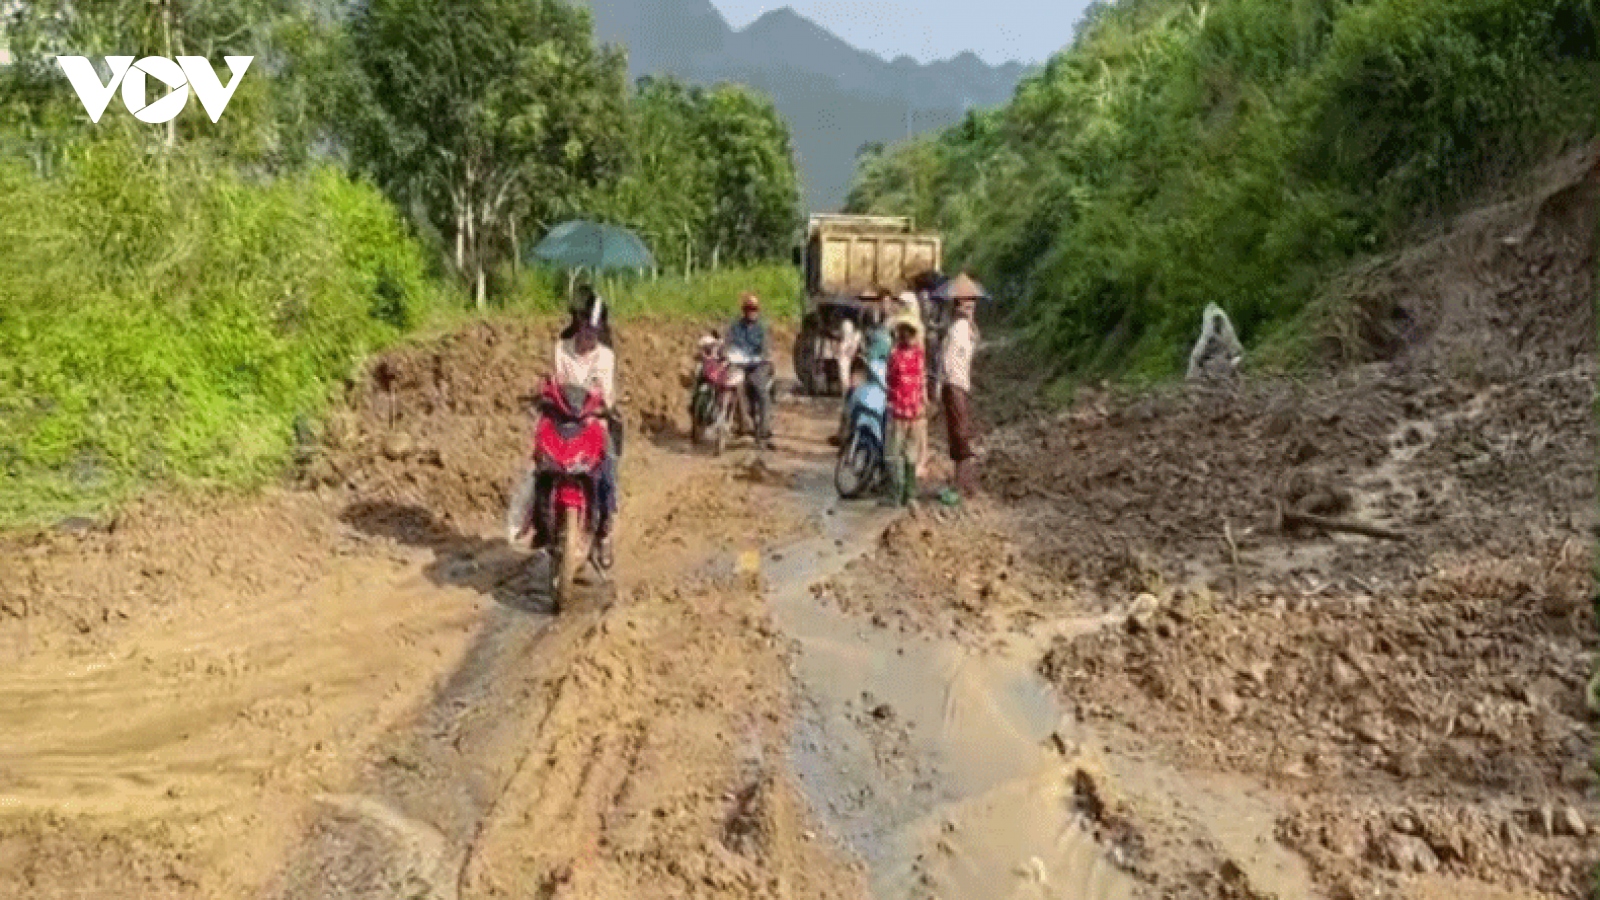 Lai Châu ban hành công điện chỉ đạo ứng phó với đợt mưa lớn